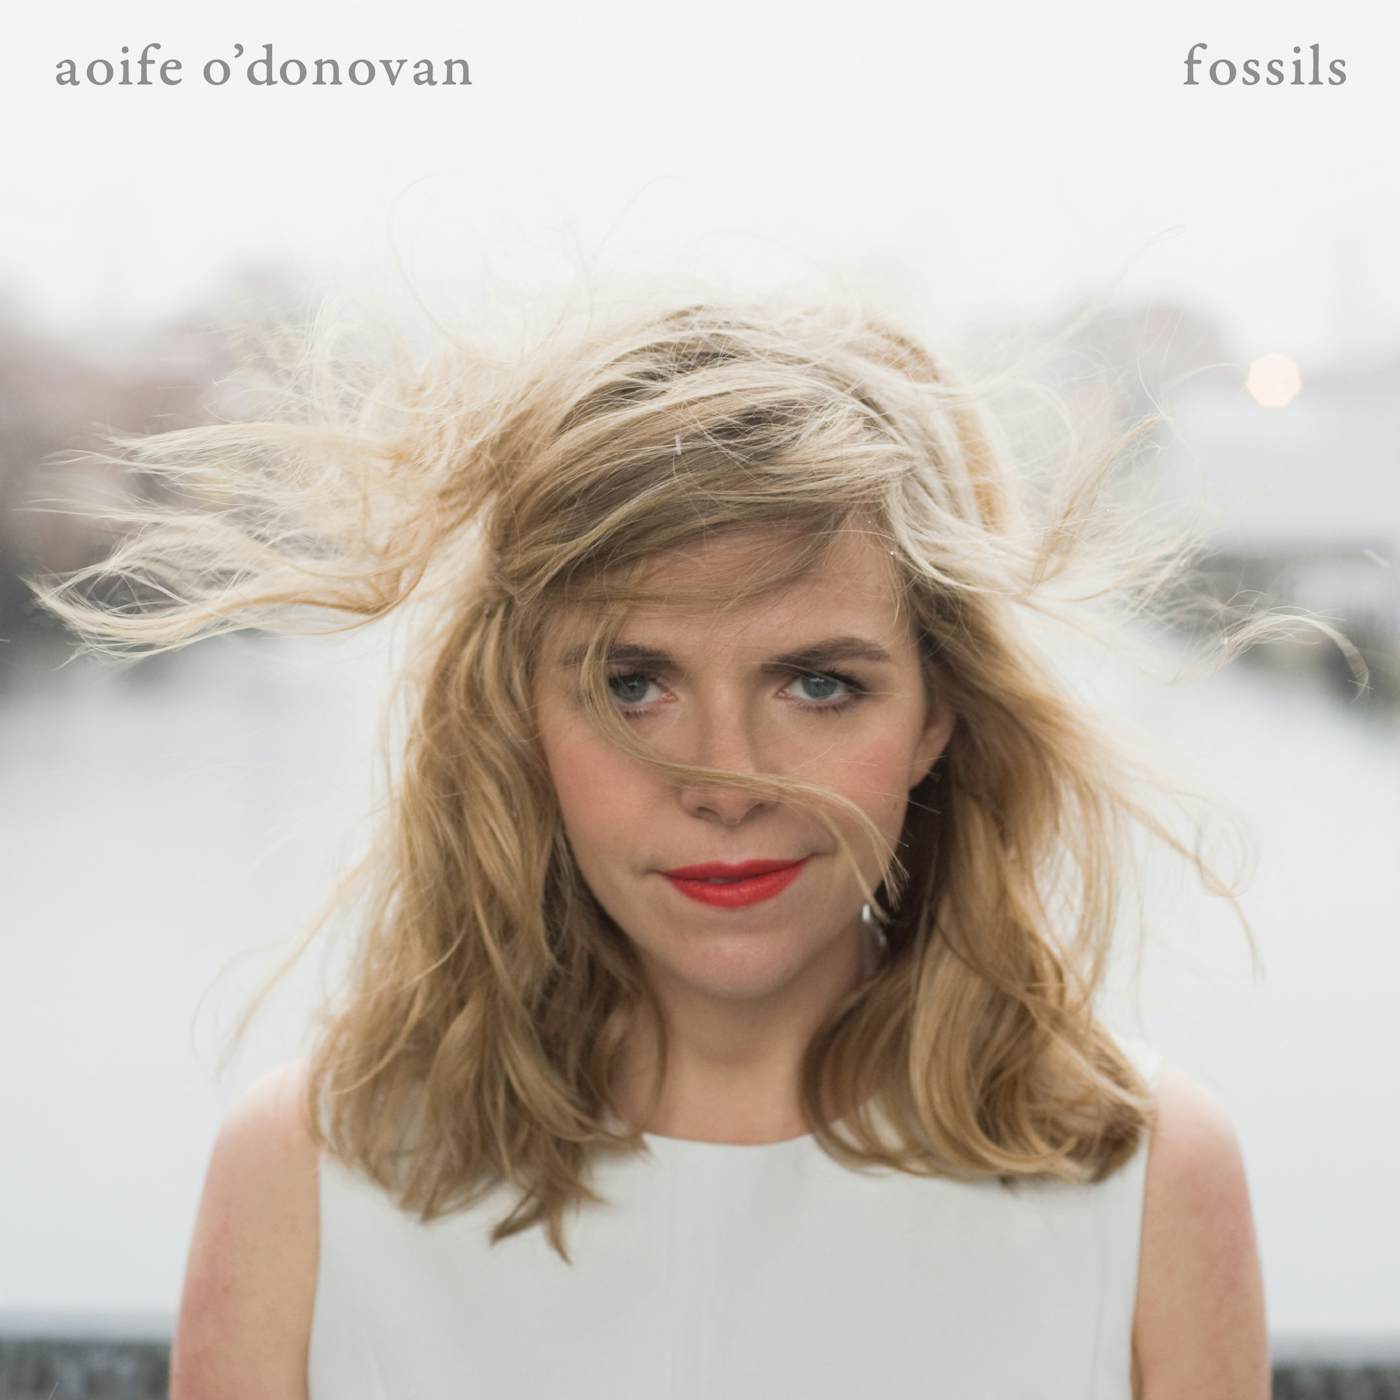 Aoife O'Donovan FOSSILS CD